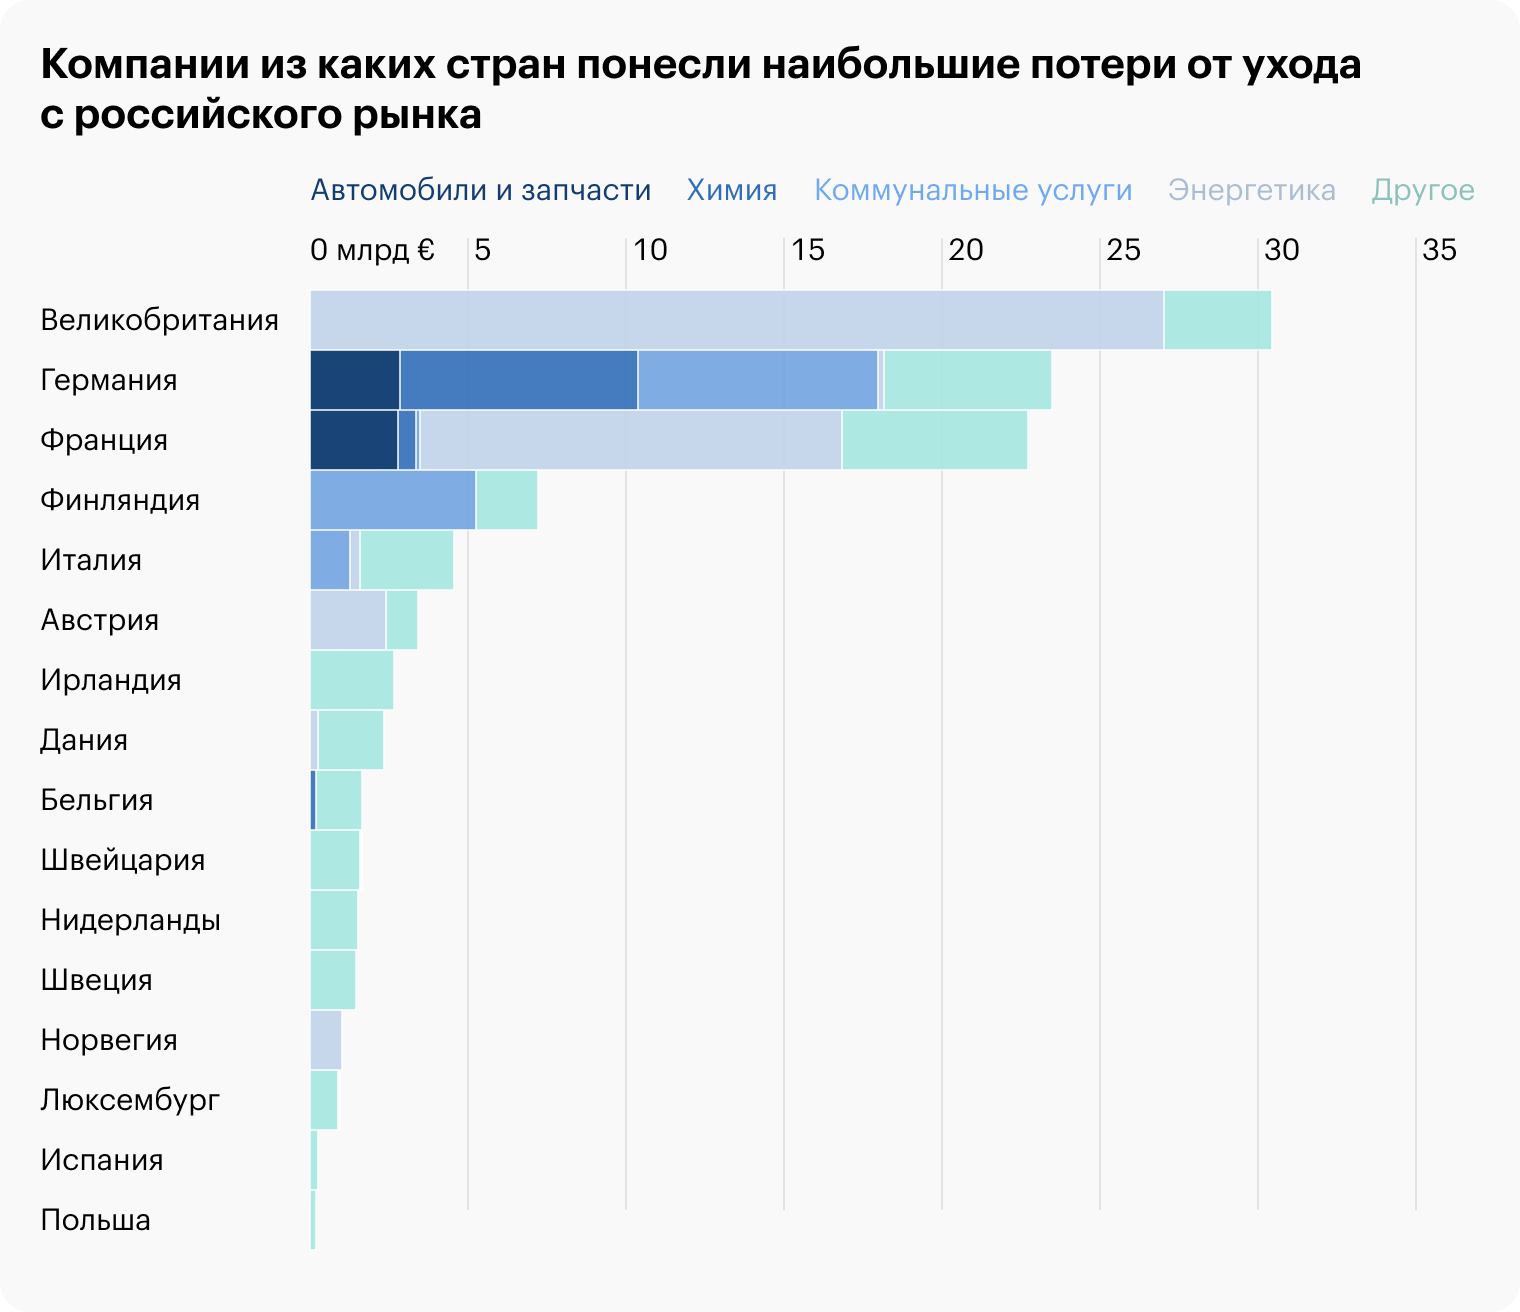 Сколько денег европейские компании потеряли в России из-за взаимных санкций